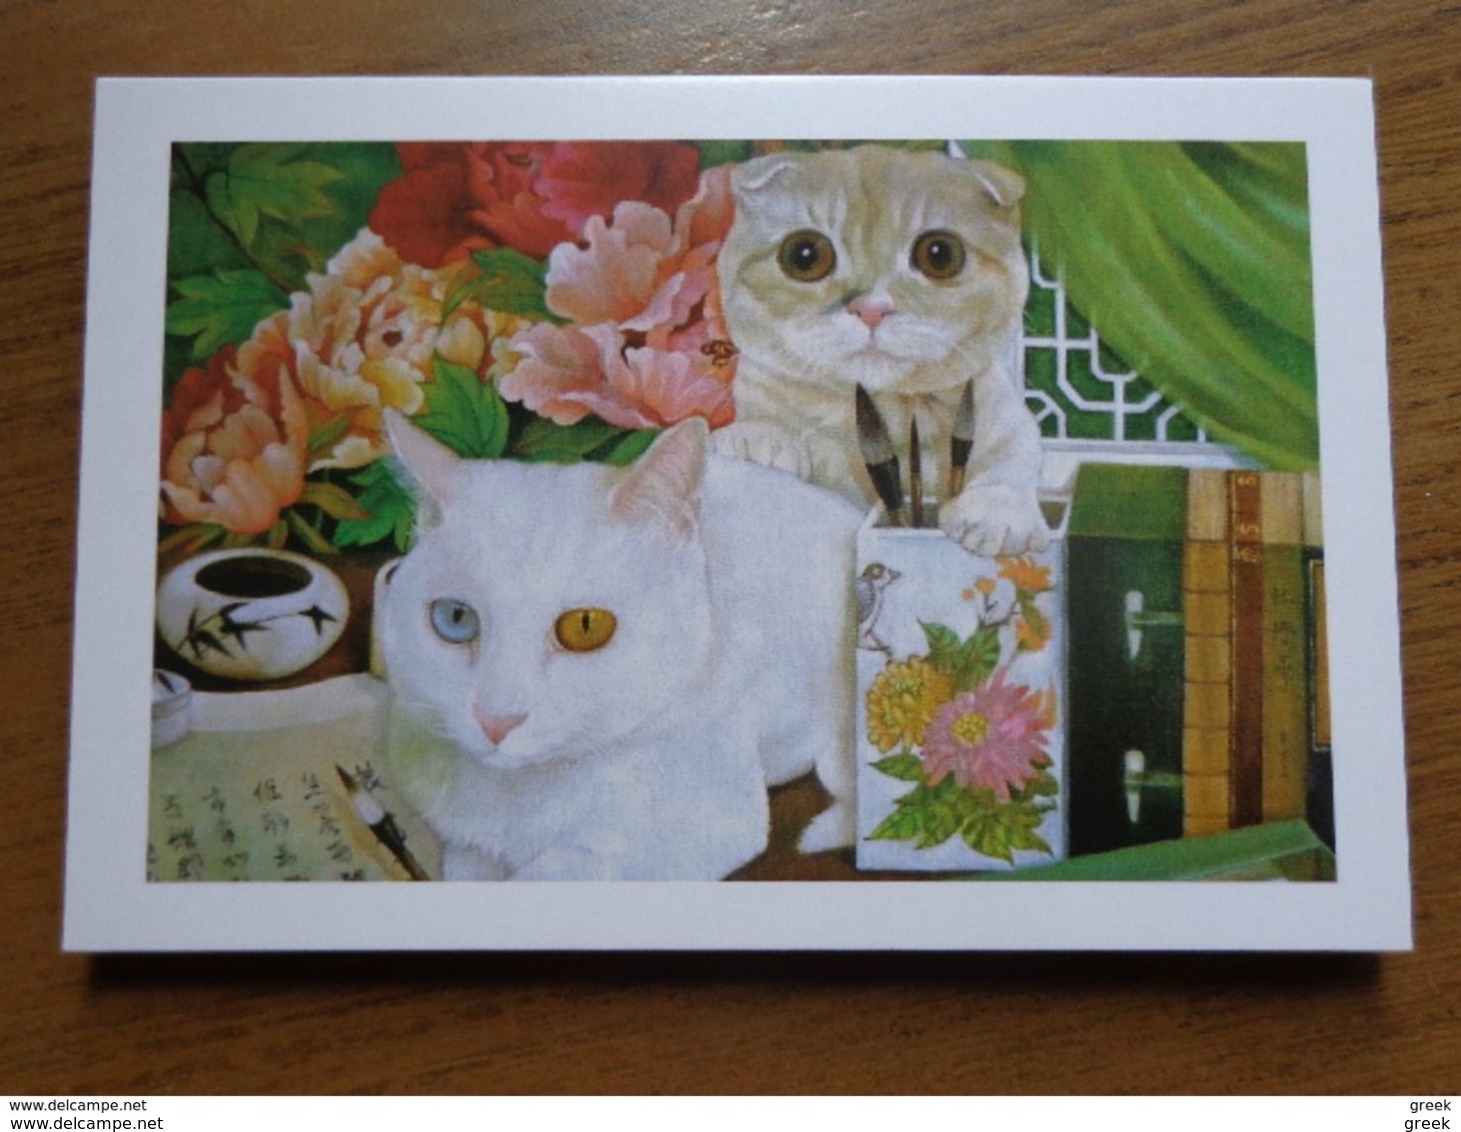 12 cards with Funny Cats - 12 leuke poezenkaarten (onbeschreven, unwritten, see pictures)